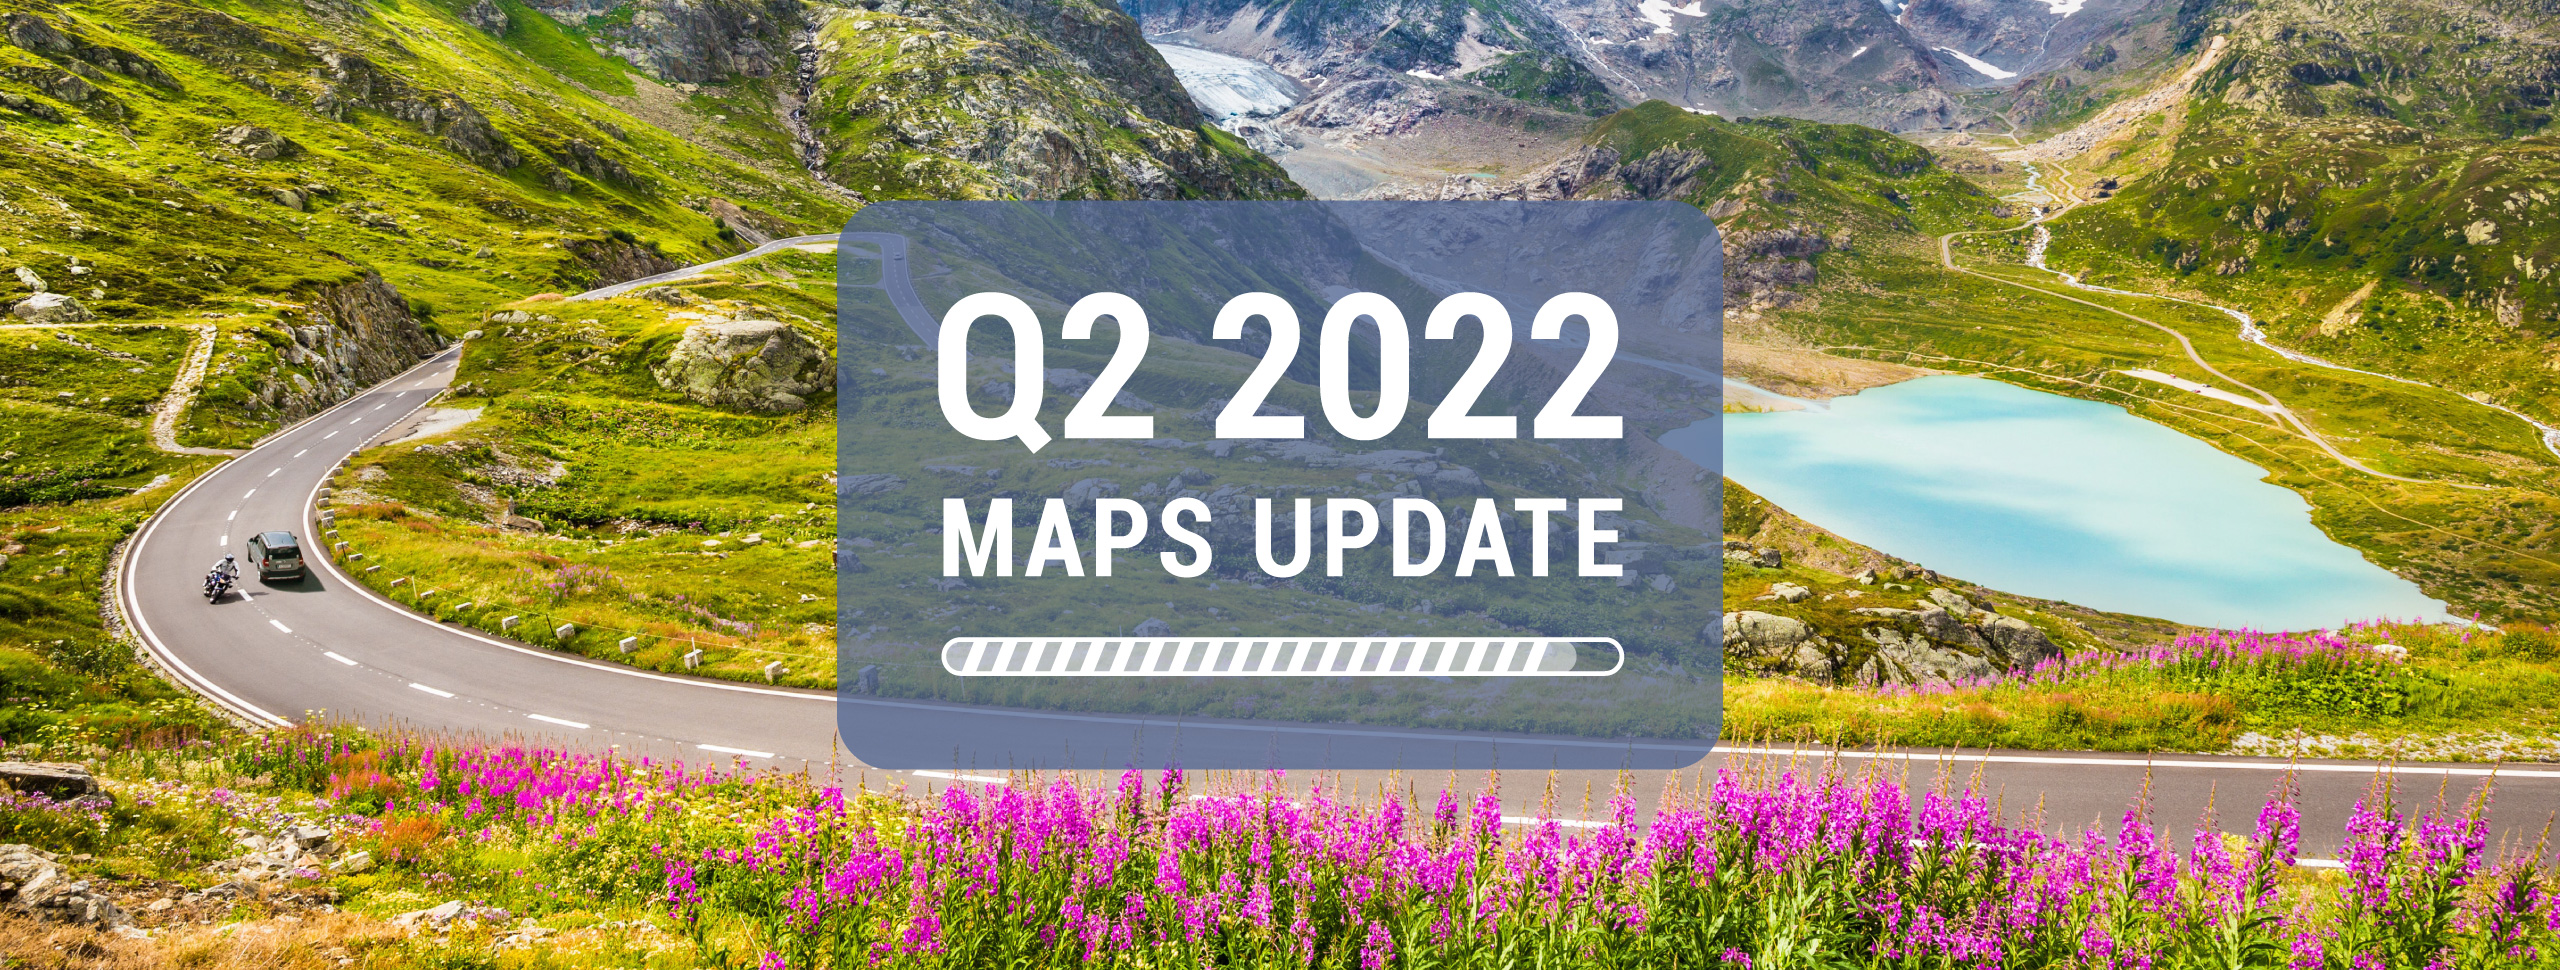 Maps update Q2 2022